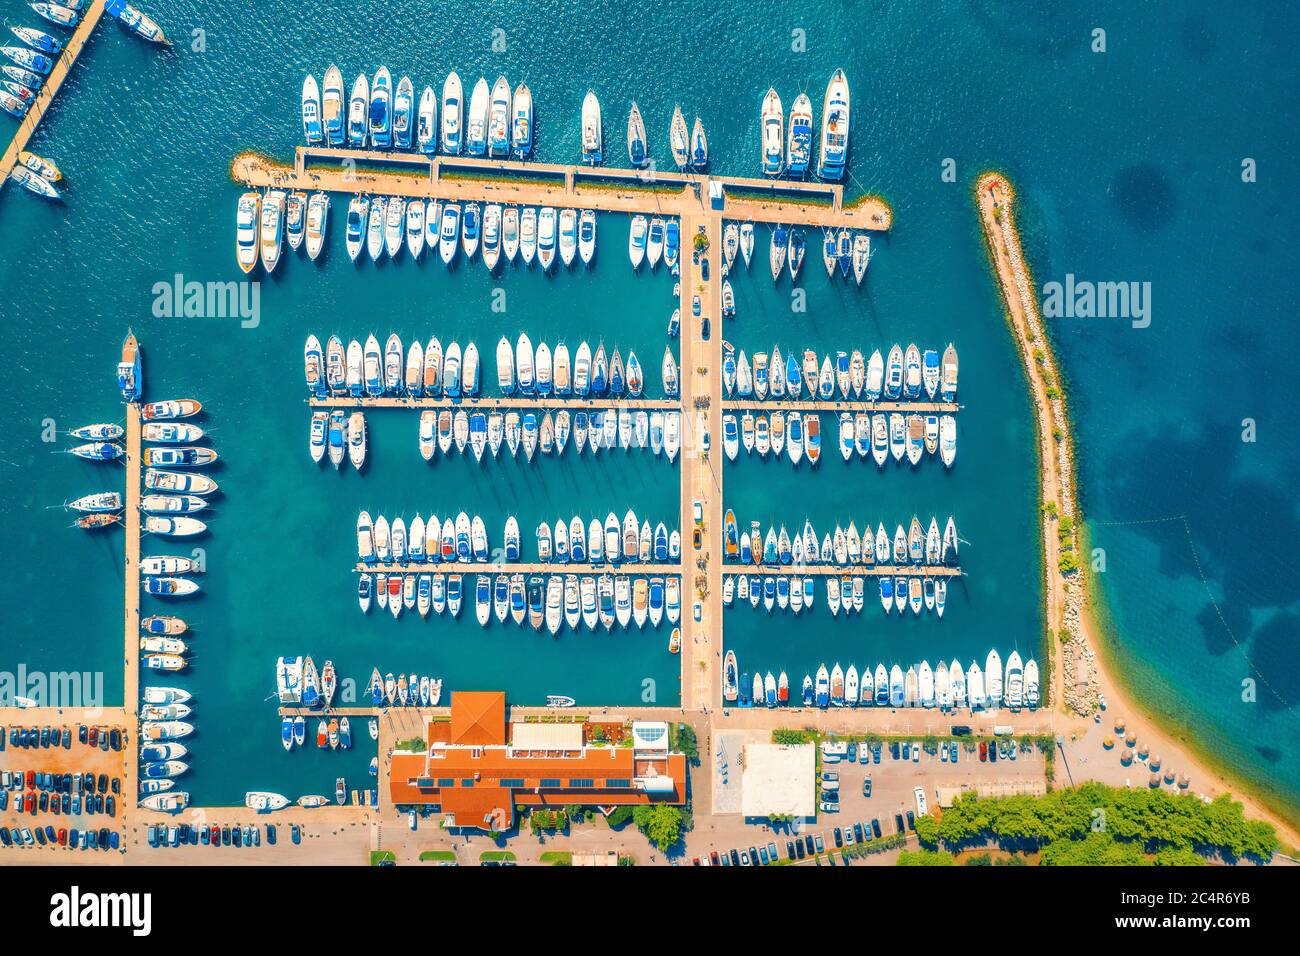 Vista aerea di barche e yacht in porto nella città vecchia al tramonto Foto Stock